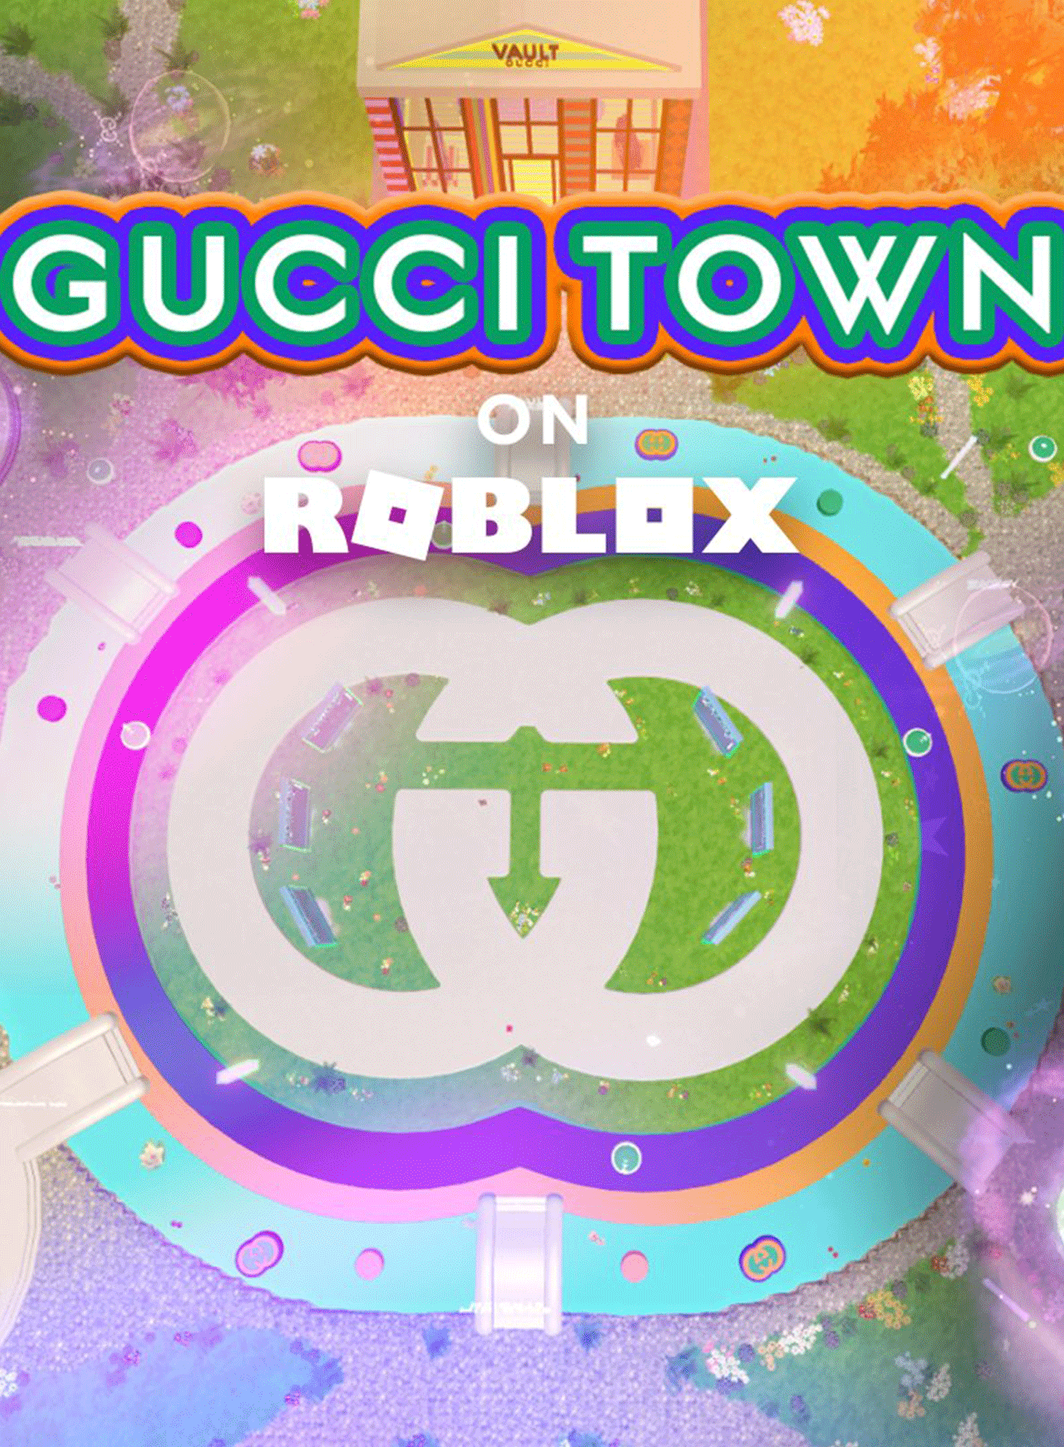 Gucci inaugure sa ville virtuelle au sein du jeu Roblox.